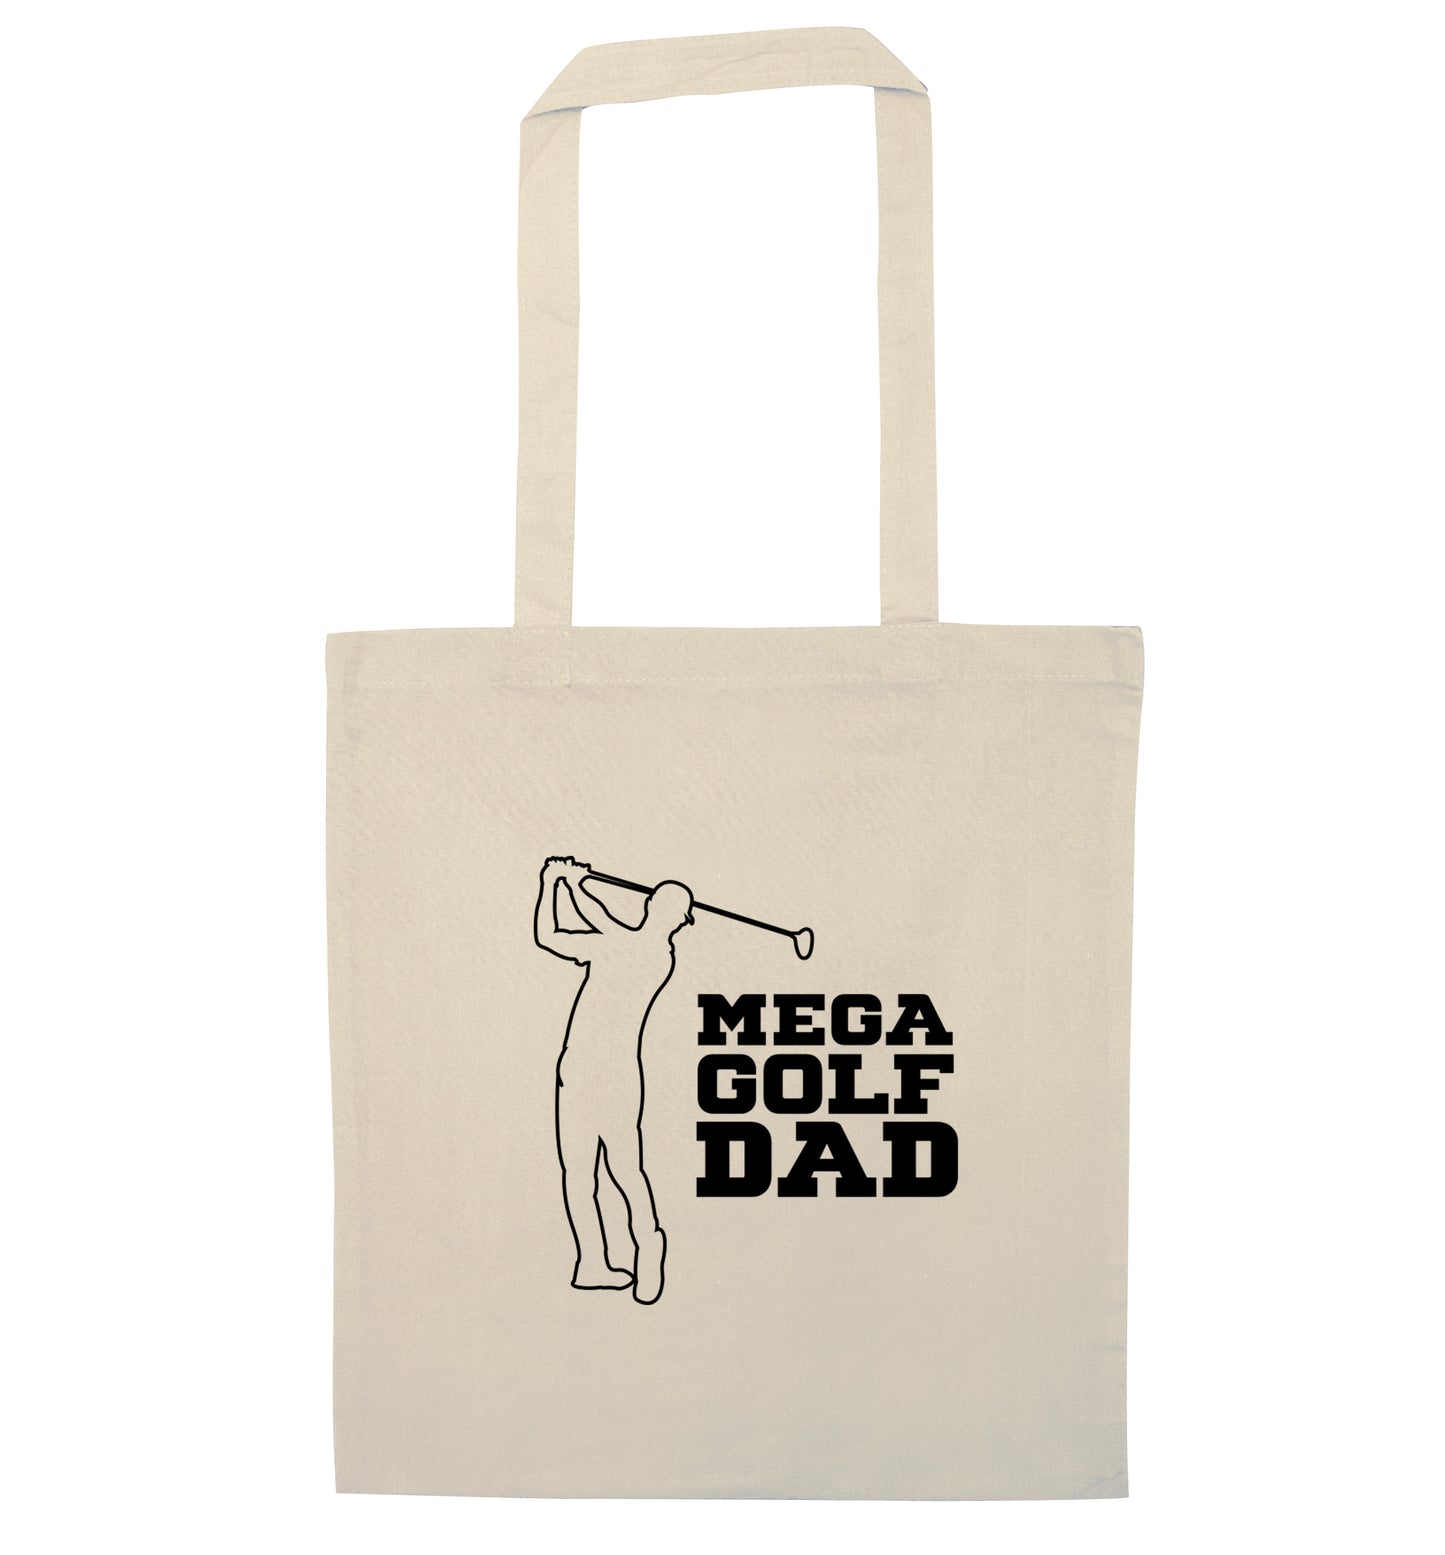 Mega golfing dad natural tote bag